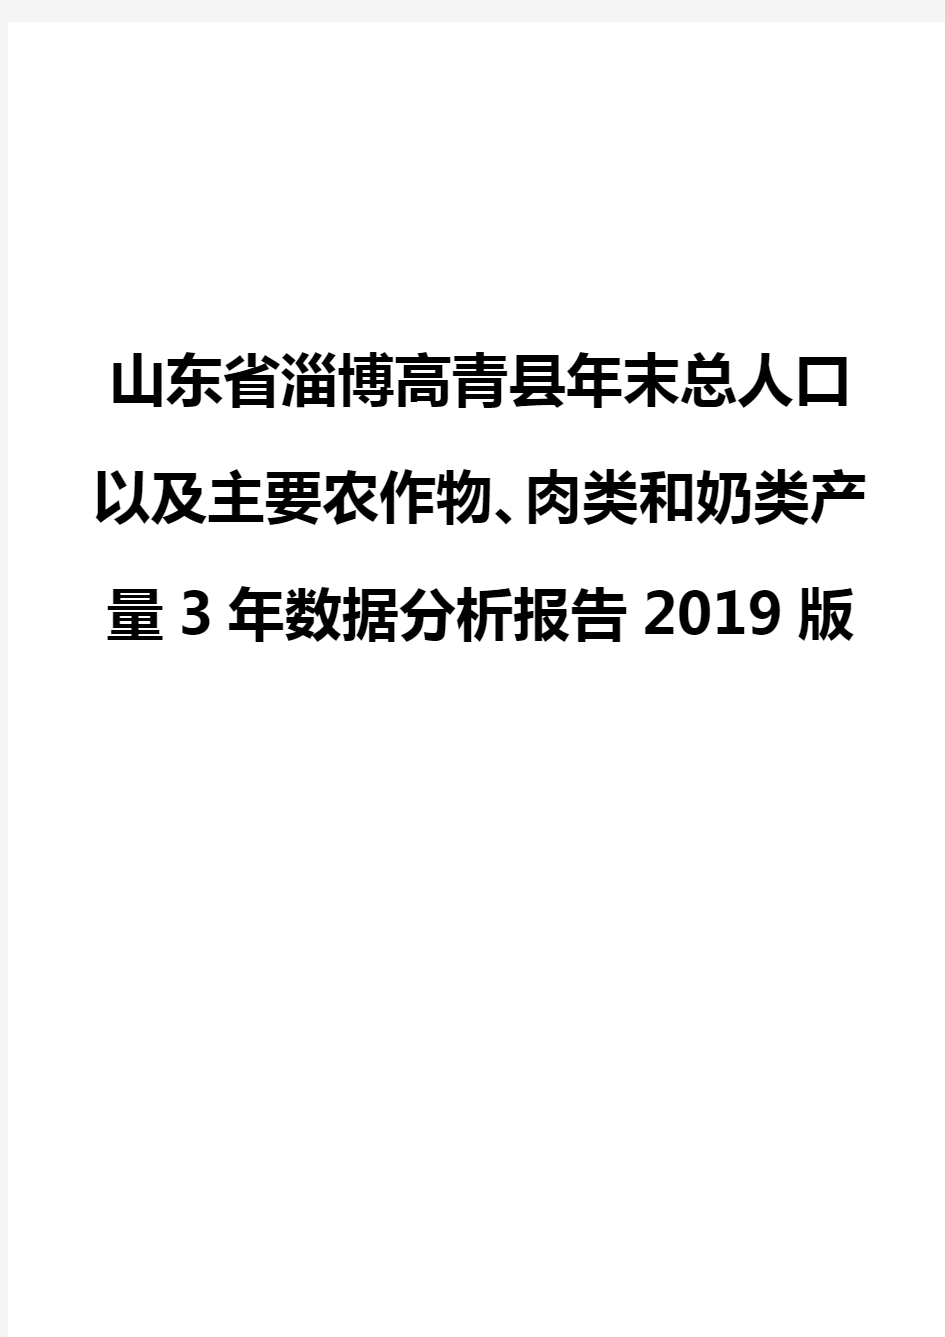 山东省淄博高青县年末总人口以及主要农作物、肉类和奶类产量3年数据分析报告2019版